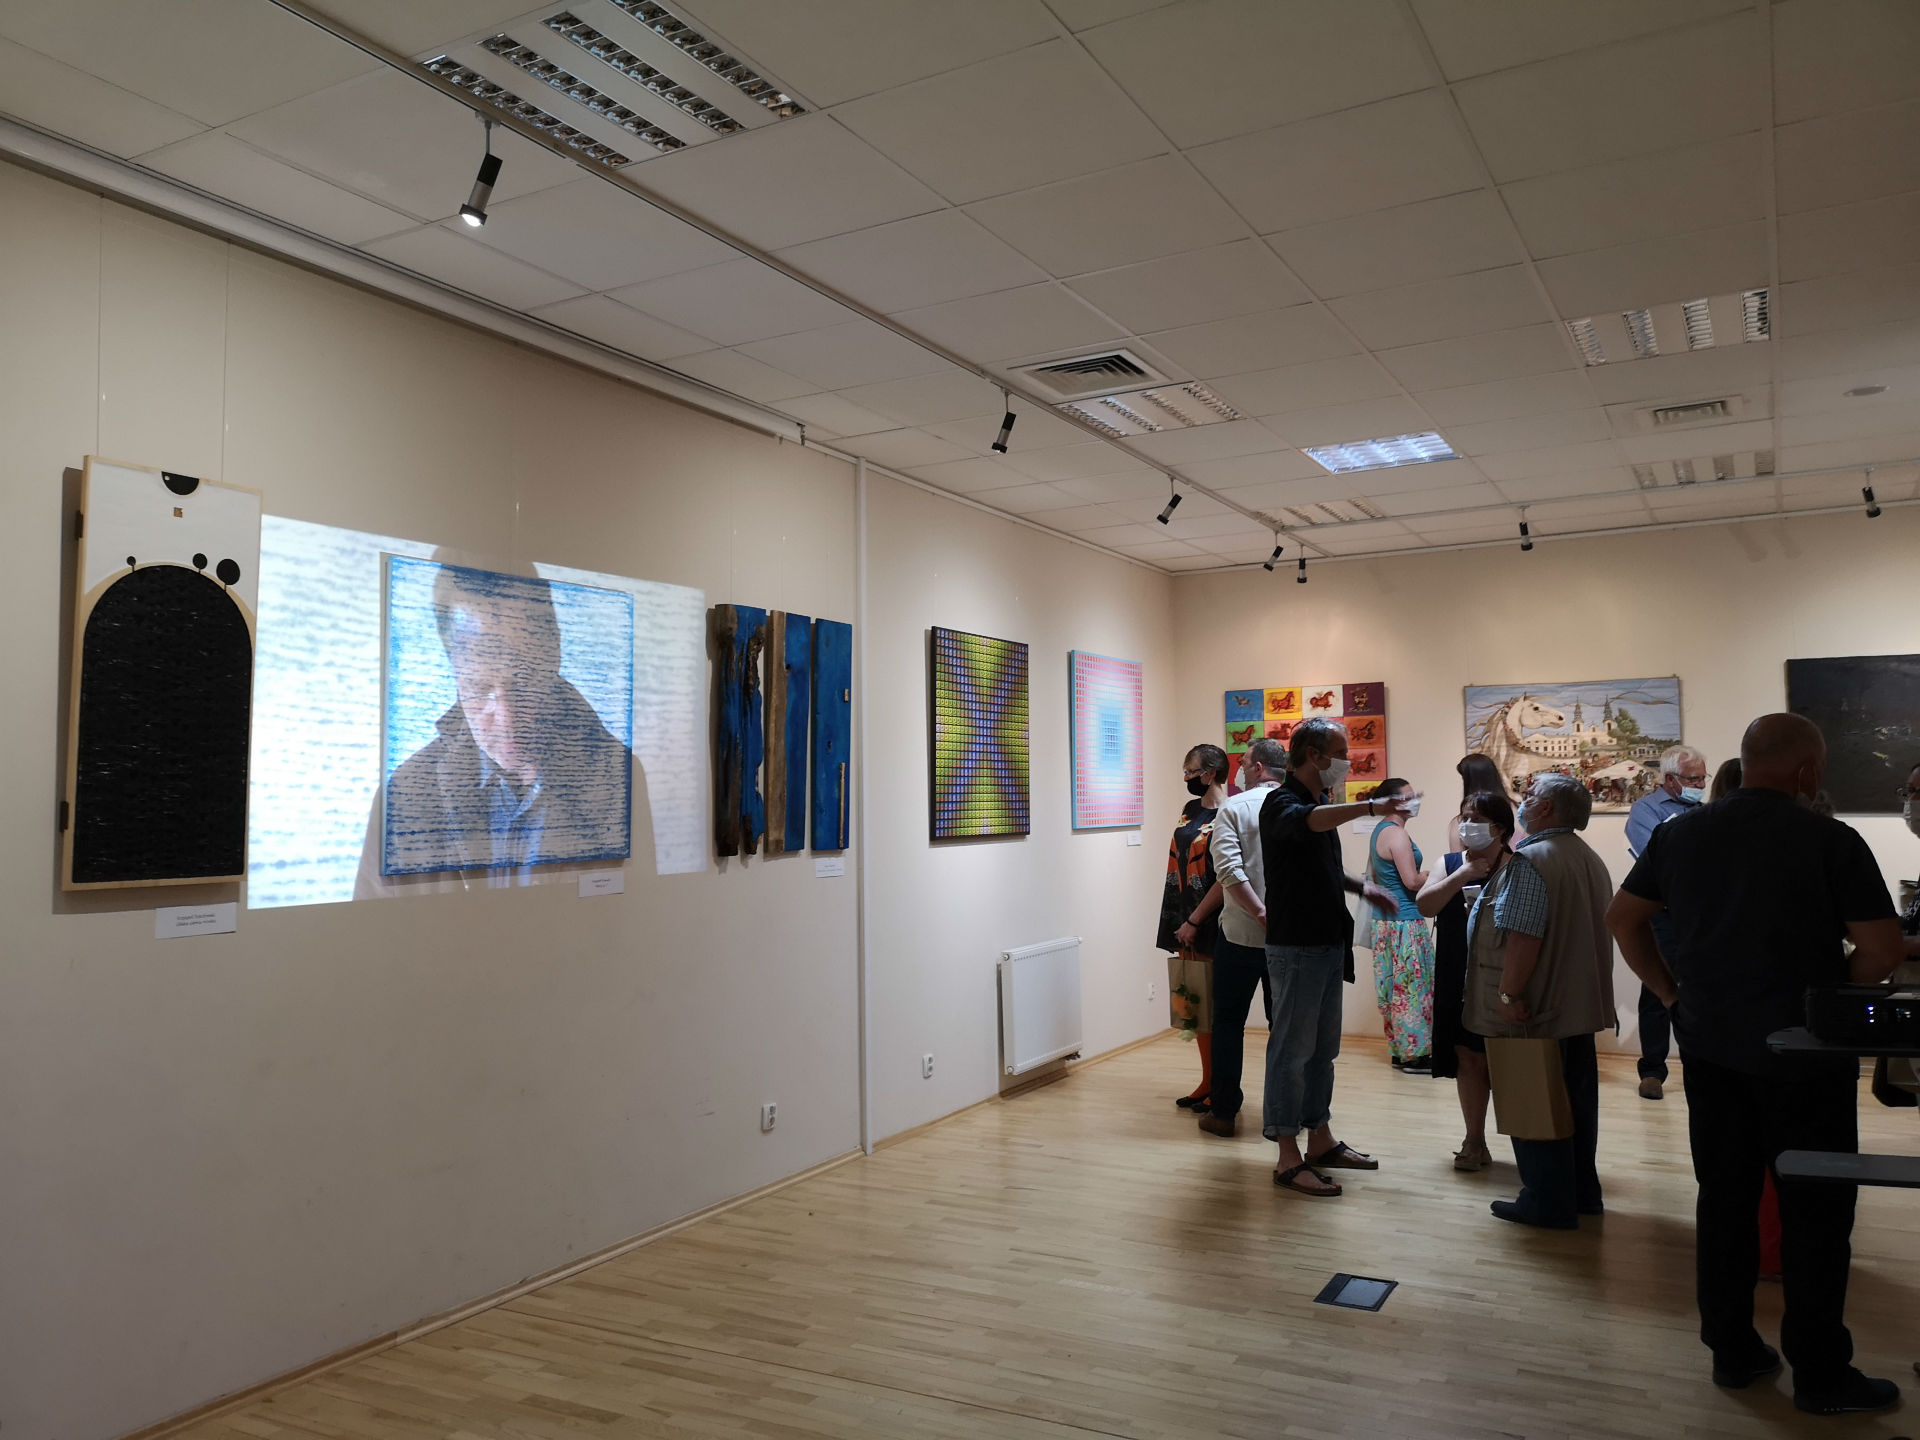 Fotografia wykonana w sali konferencyjno-wystawowej w Miejskiej Bibliotece Publicznej w Mińsku Mazowieckim. Z lewej strony ściana z zawieszonymi obrazami, między którymi wyświetlany jest film z rzutnika. Prawą stronę kadru wypełniają zwiedzający.